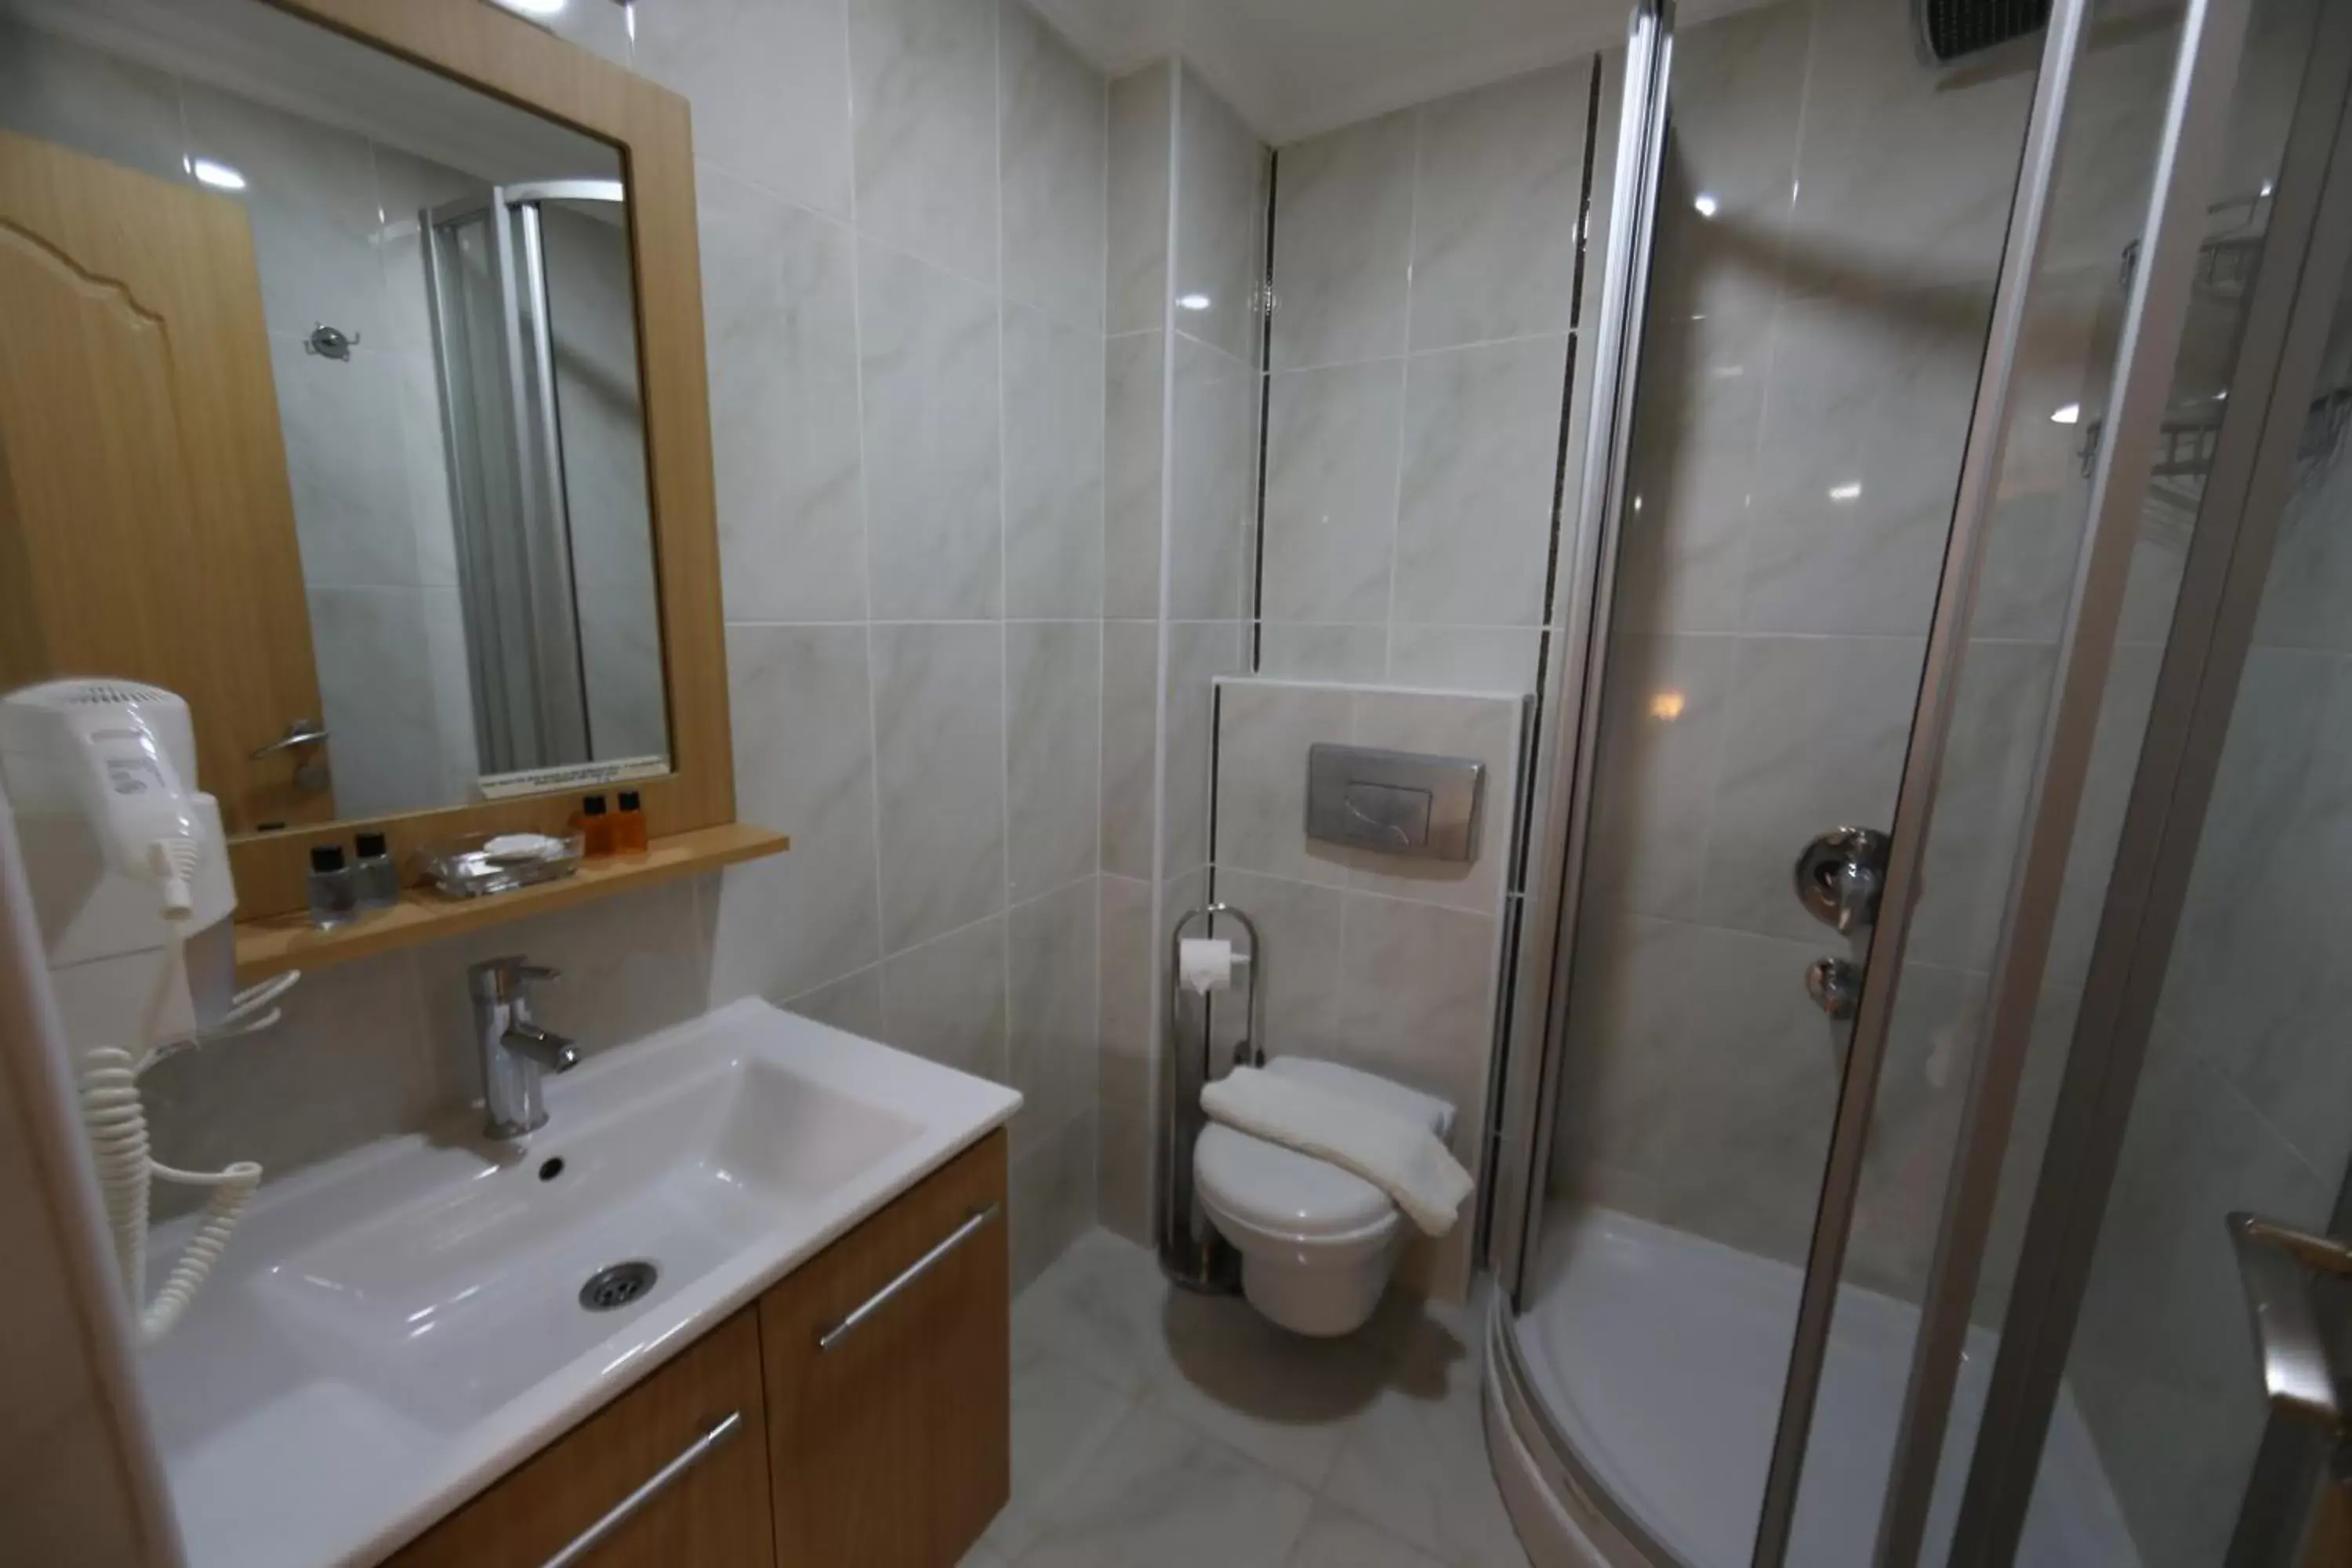 Bathroom in Sultans Royal Hotel